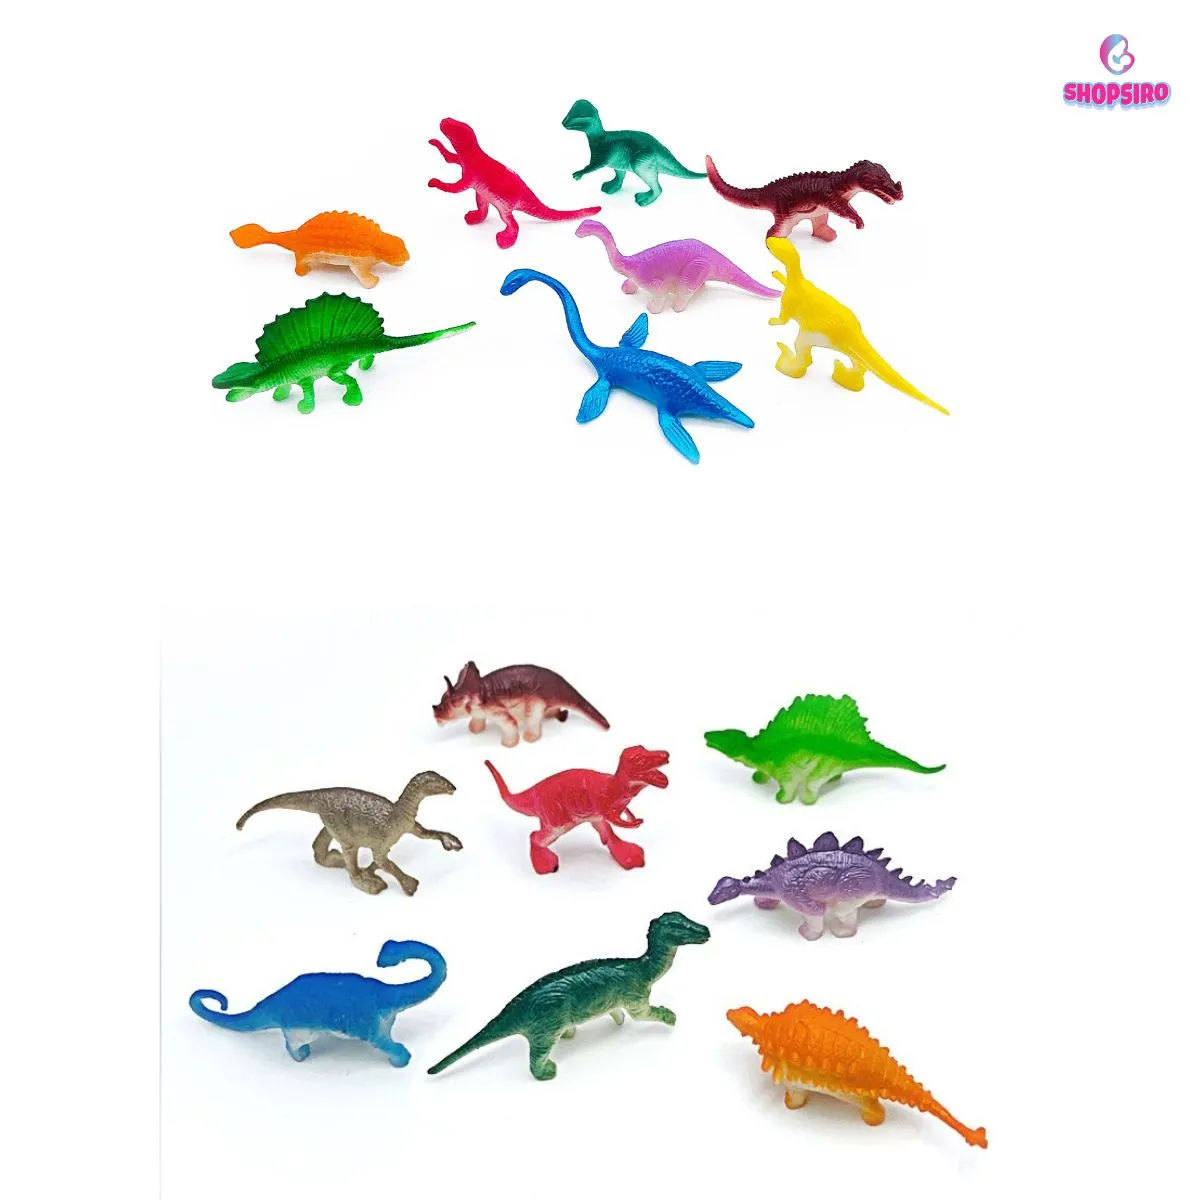 Mô hình khủng long, mô hình động vật bằng nhựa 5 – 7cm cho bé, bộ gồm